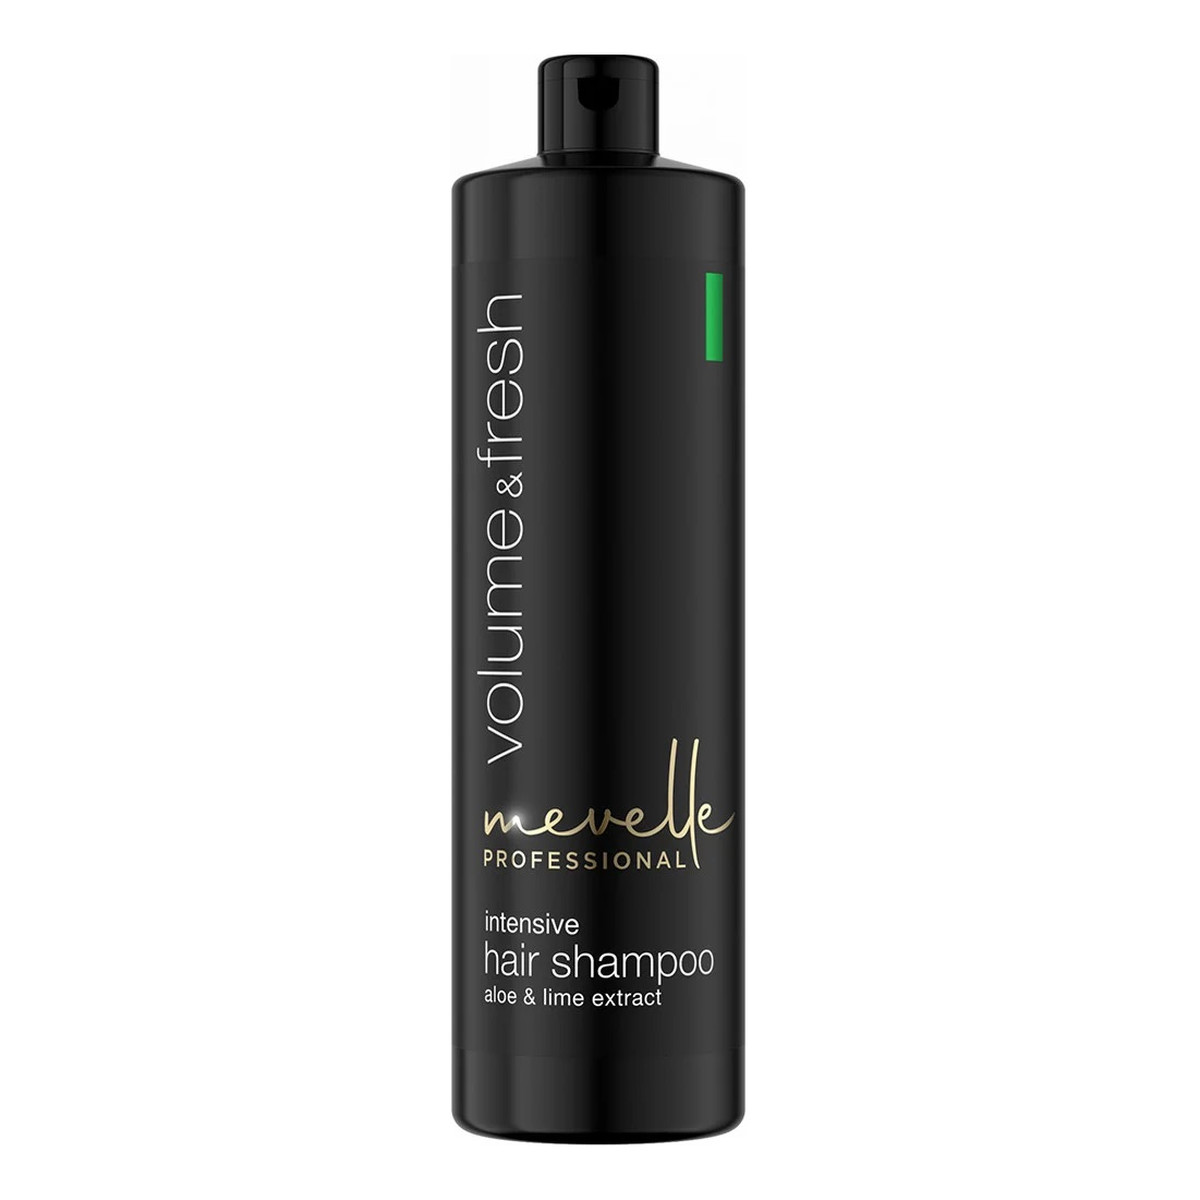 Mevelle Professional Volume & fresh intensive hair shampoo odświeżający szampon zwiększający objętość włosów 900ml